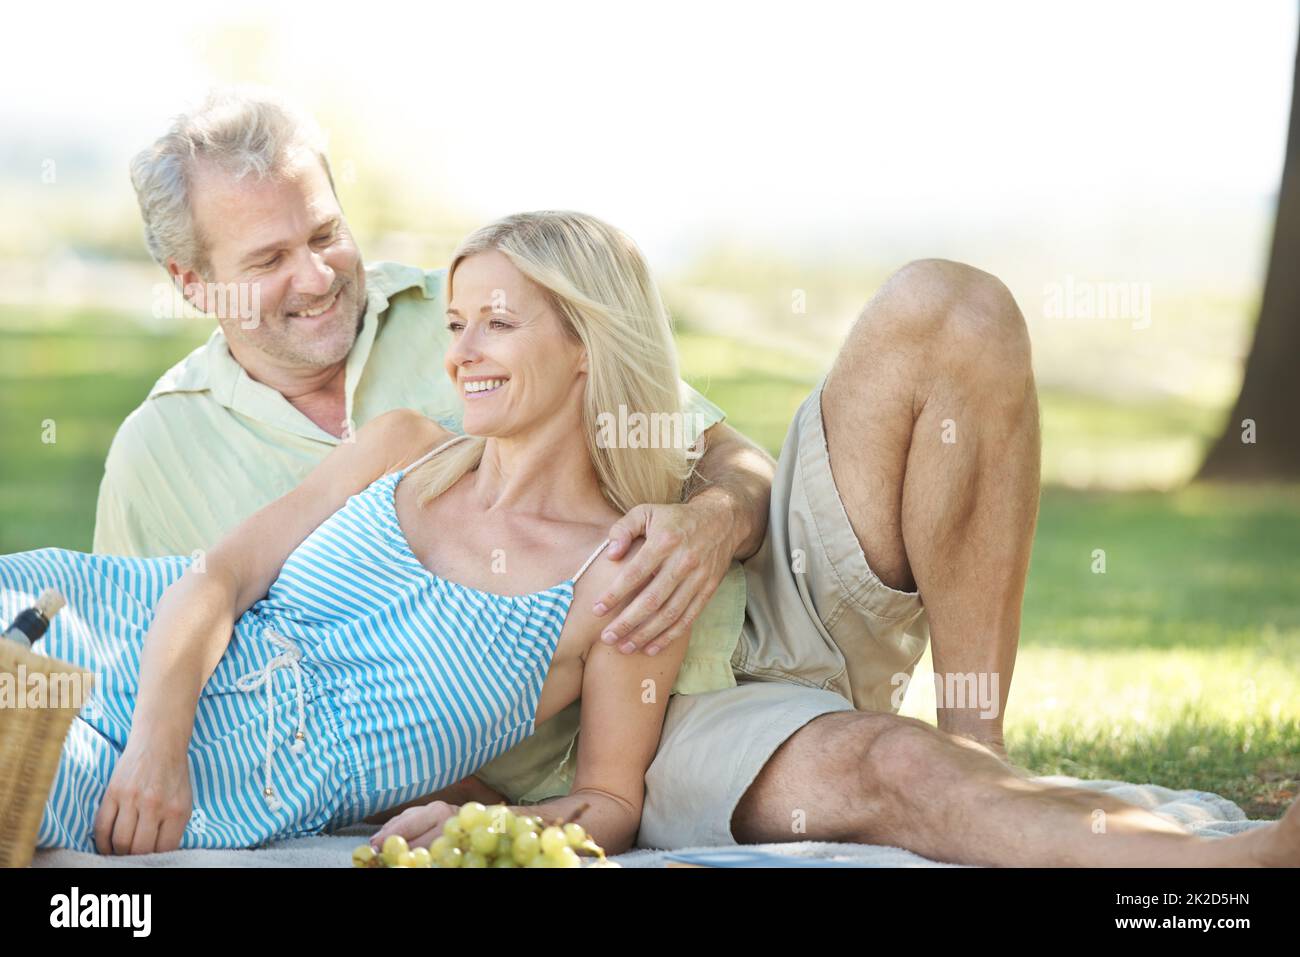 Liebevolle Momente im Freien. Ein lächelnder Ehemann und eine lächelnde Frau genießen ein gemütliches Picknick im Park. Stockfoto